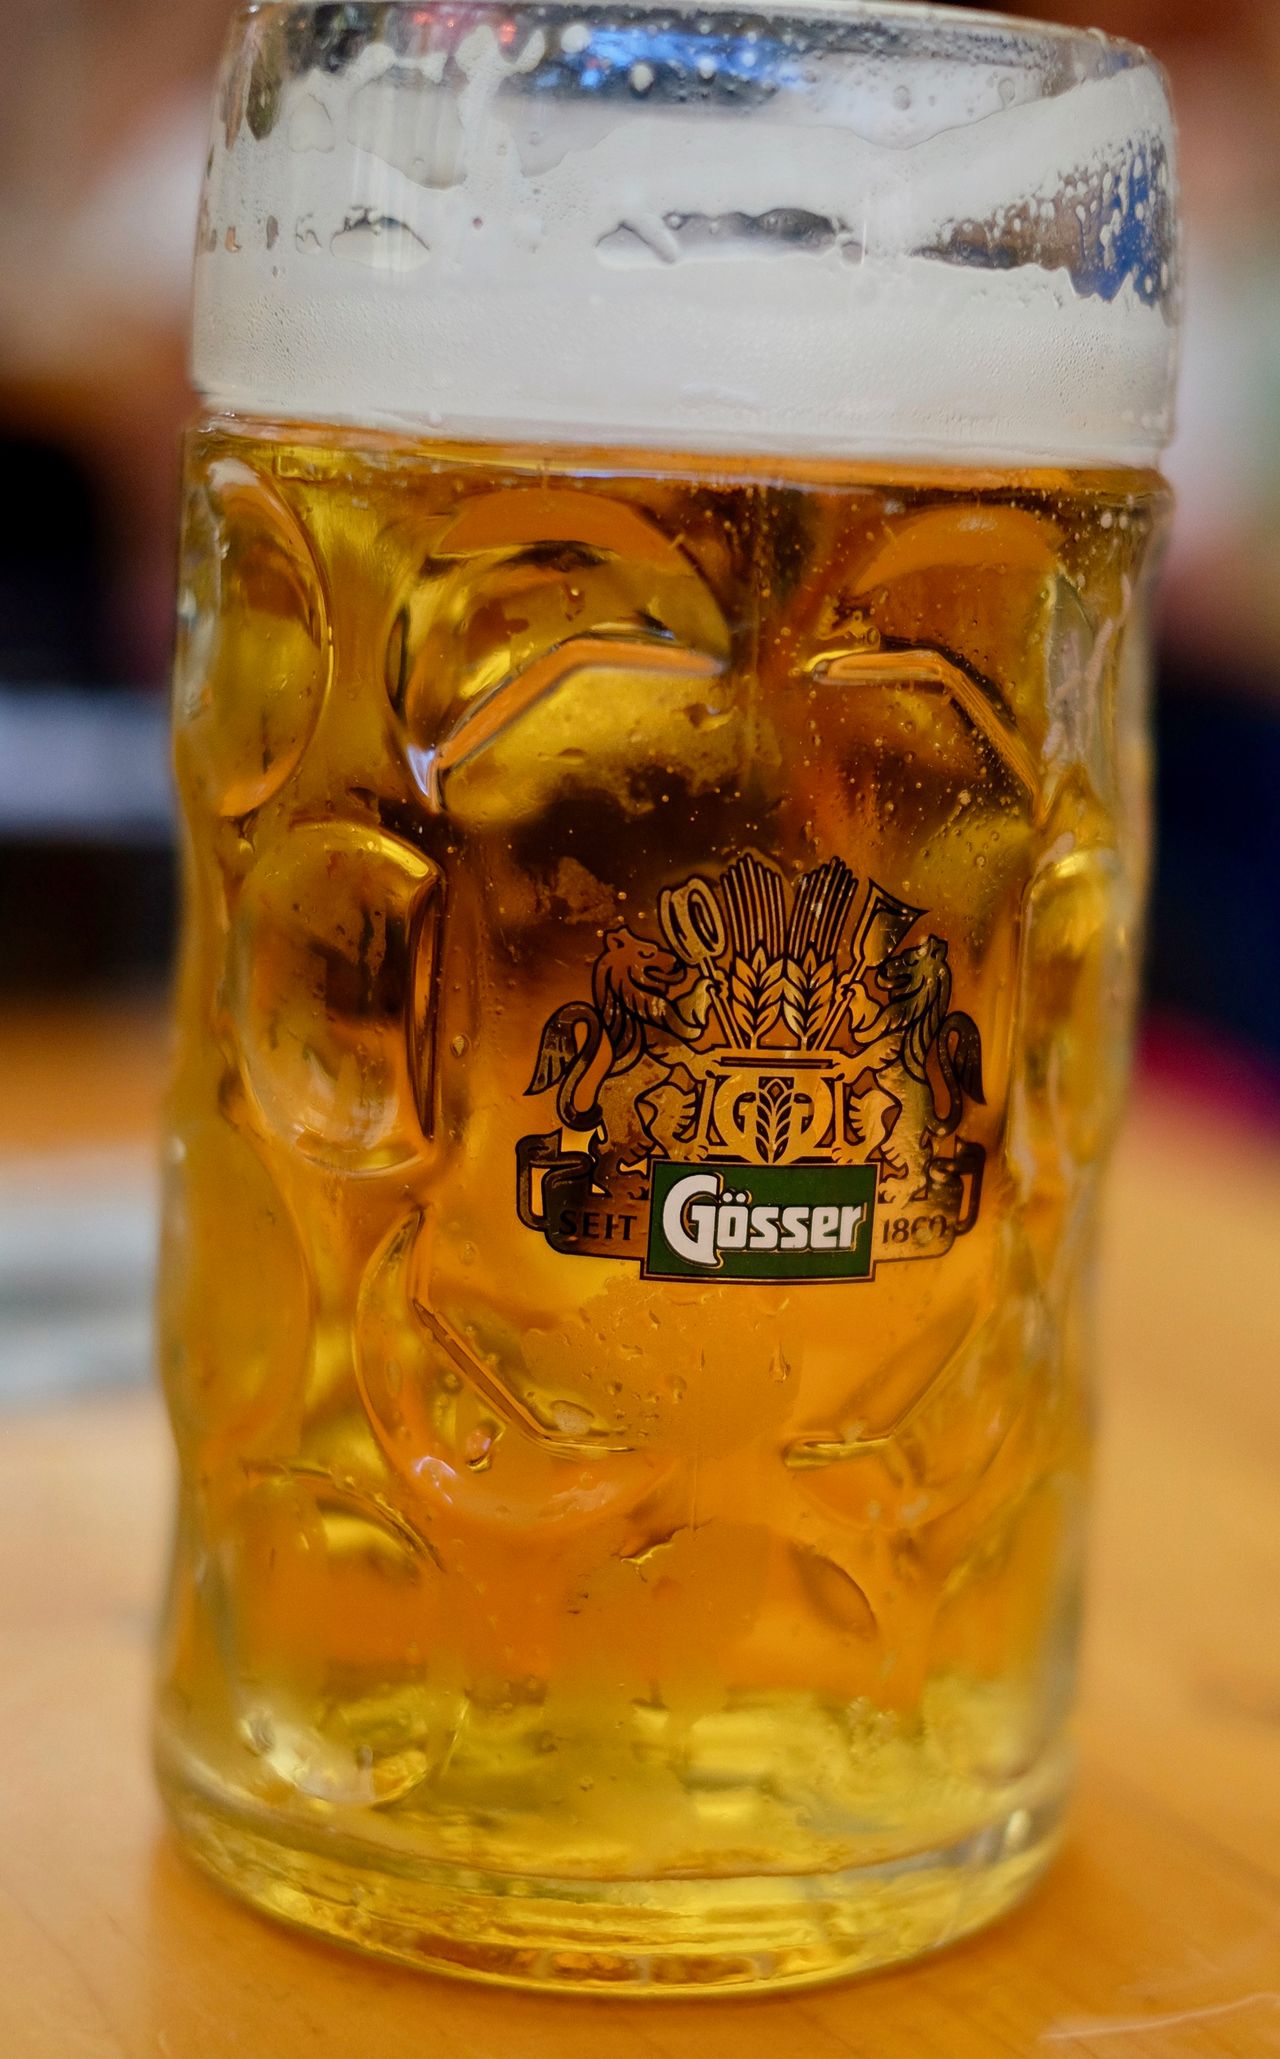 Oktoberfest beer mug that reads Gösser